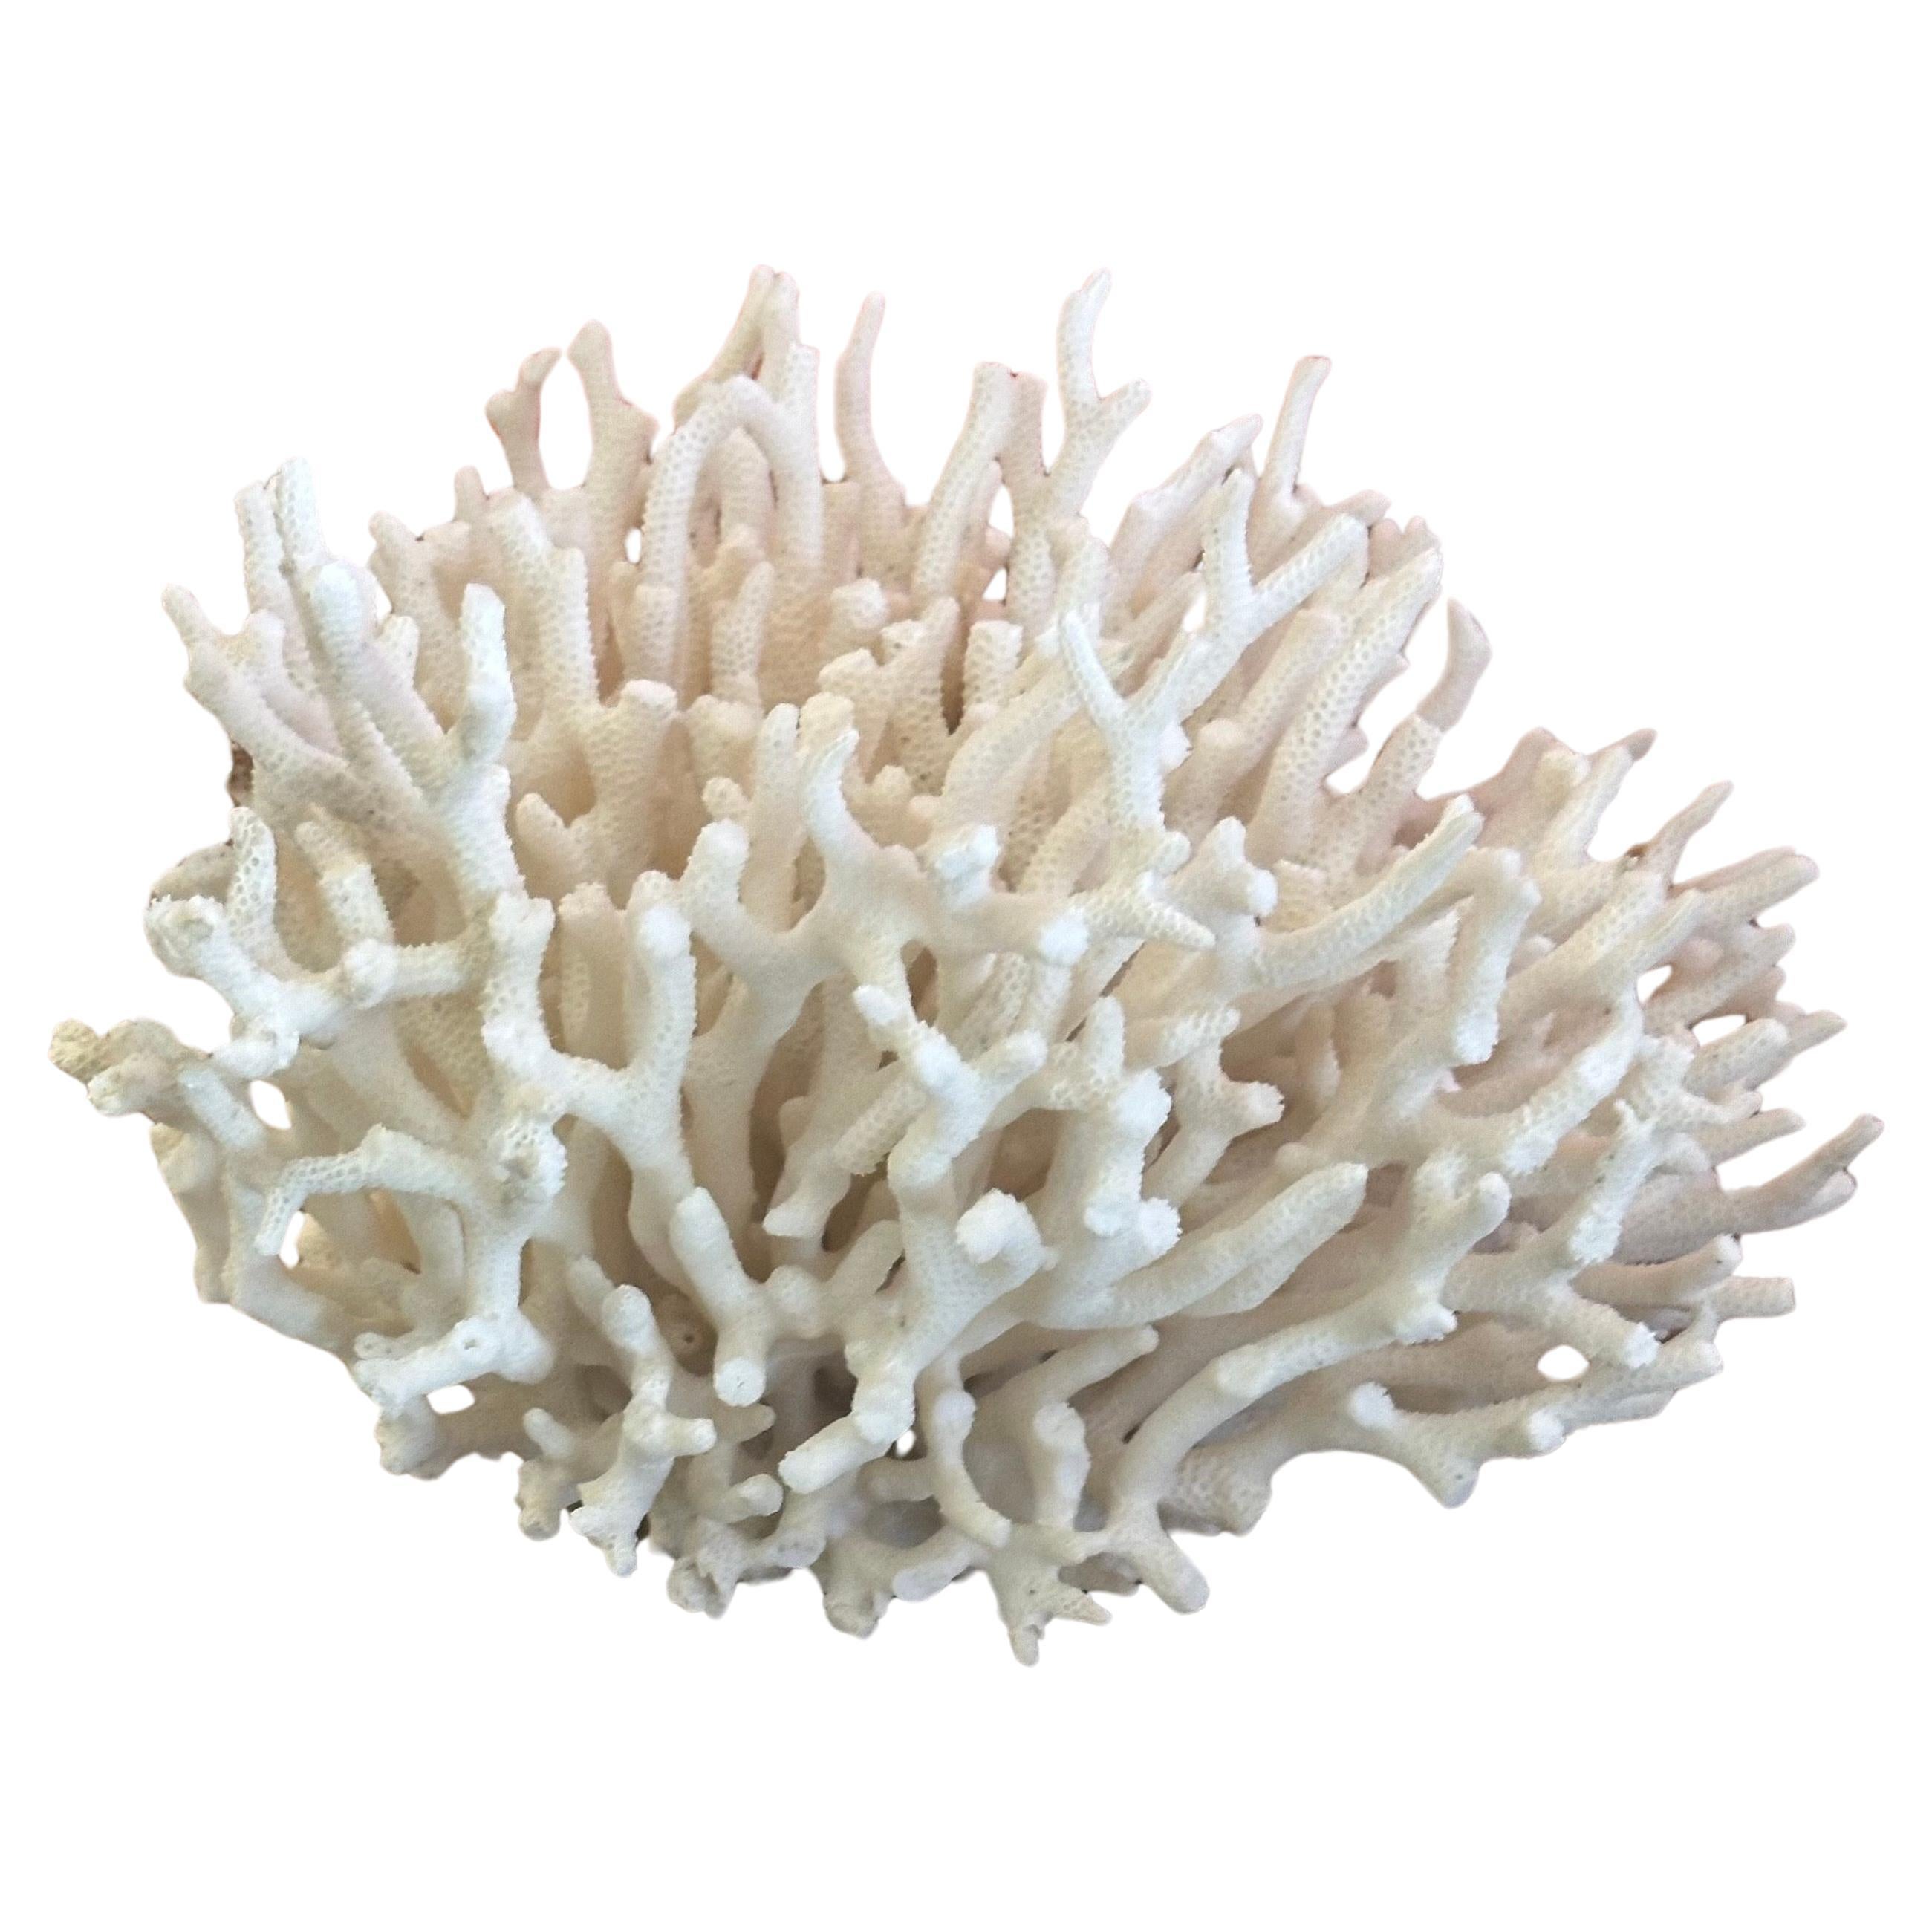 Natürliche weiße Meereskoralle Exemplar